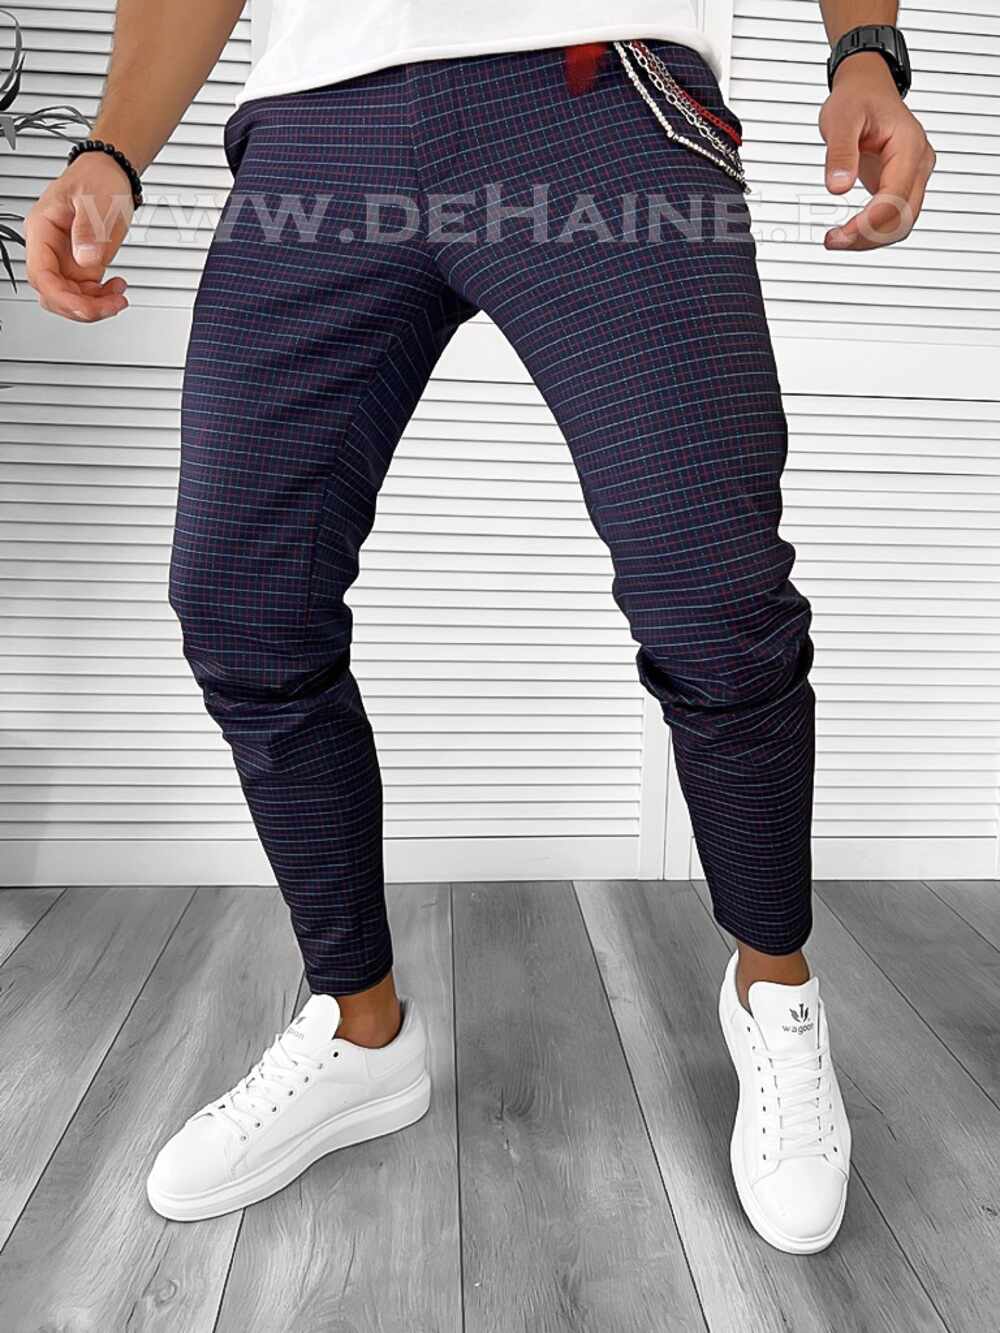 Pantaloni barbati casual regular fit bleumarin B7938 2-5 E